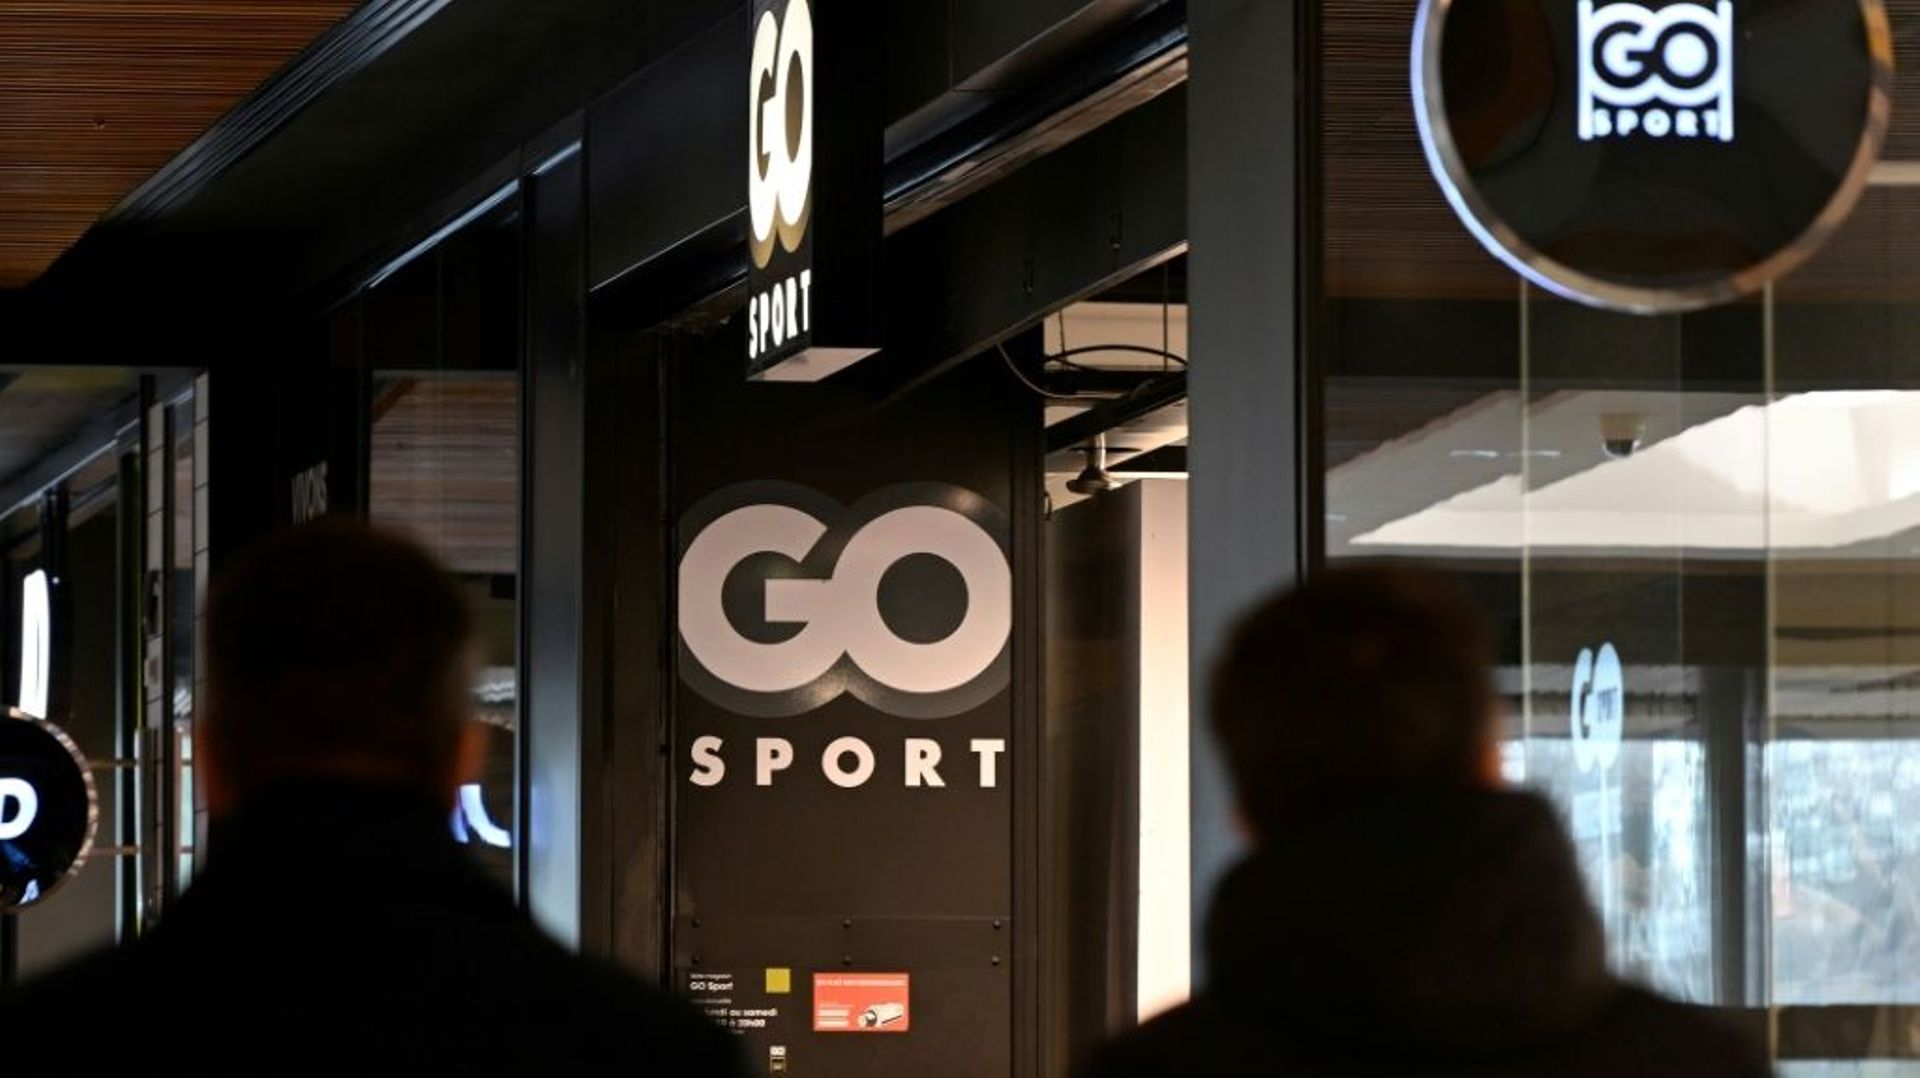 La société Go Sport France a été placée en redressement judiciaire, deux semaines après sa maison-mère le distributeur d’articles sportifs Groupe Go Sport